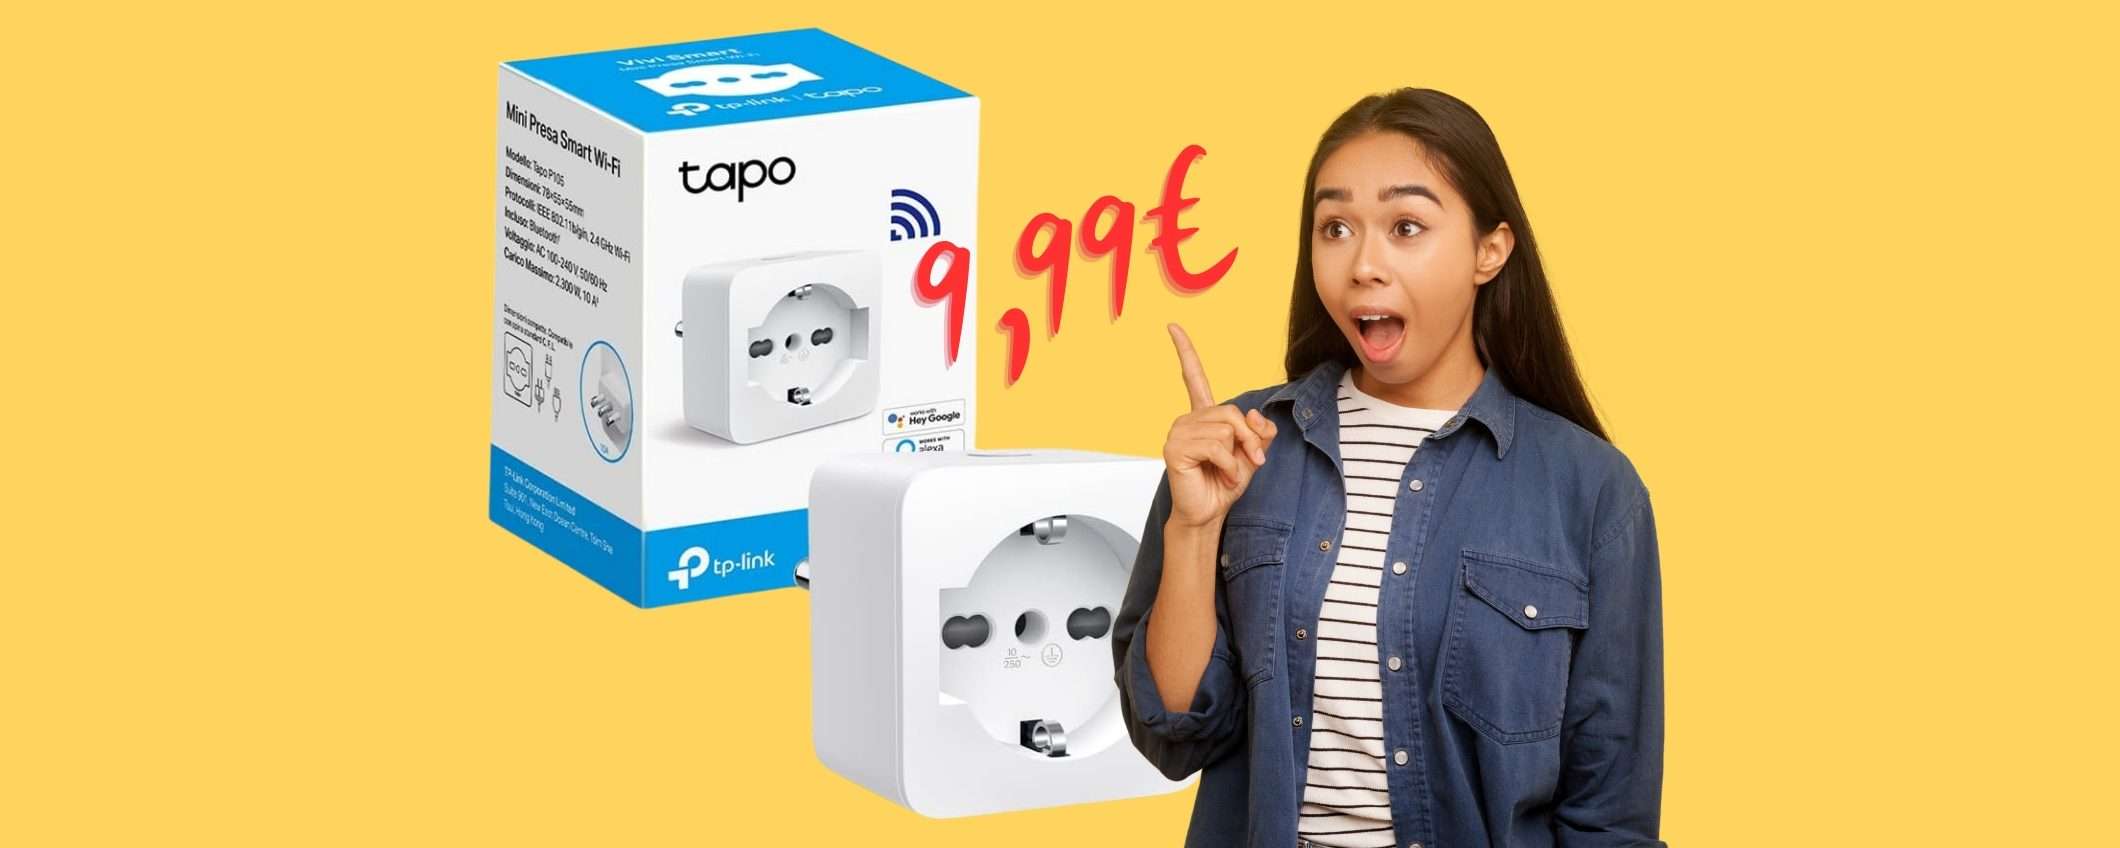 Solo 9,99€ su Amazon per la presa smart TP-Link Tapo P105